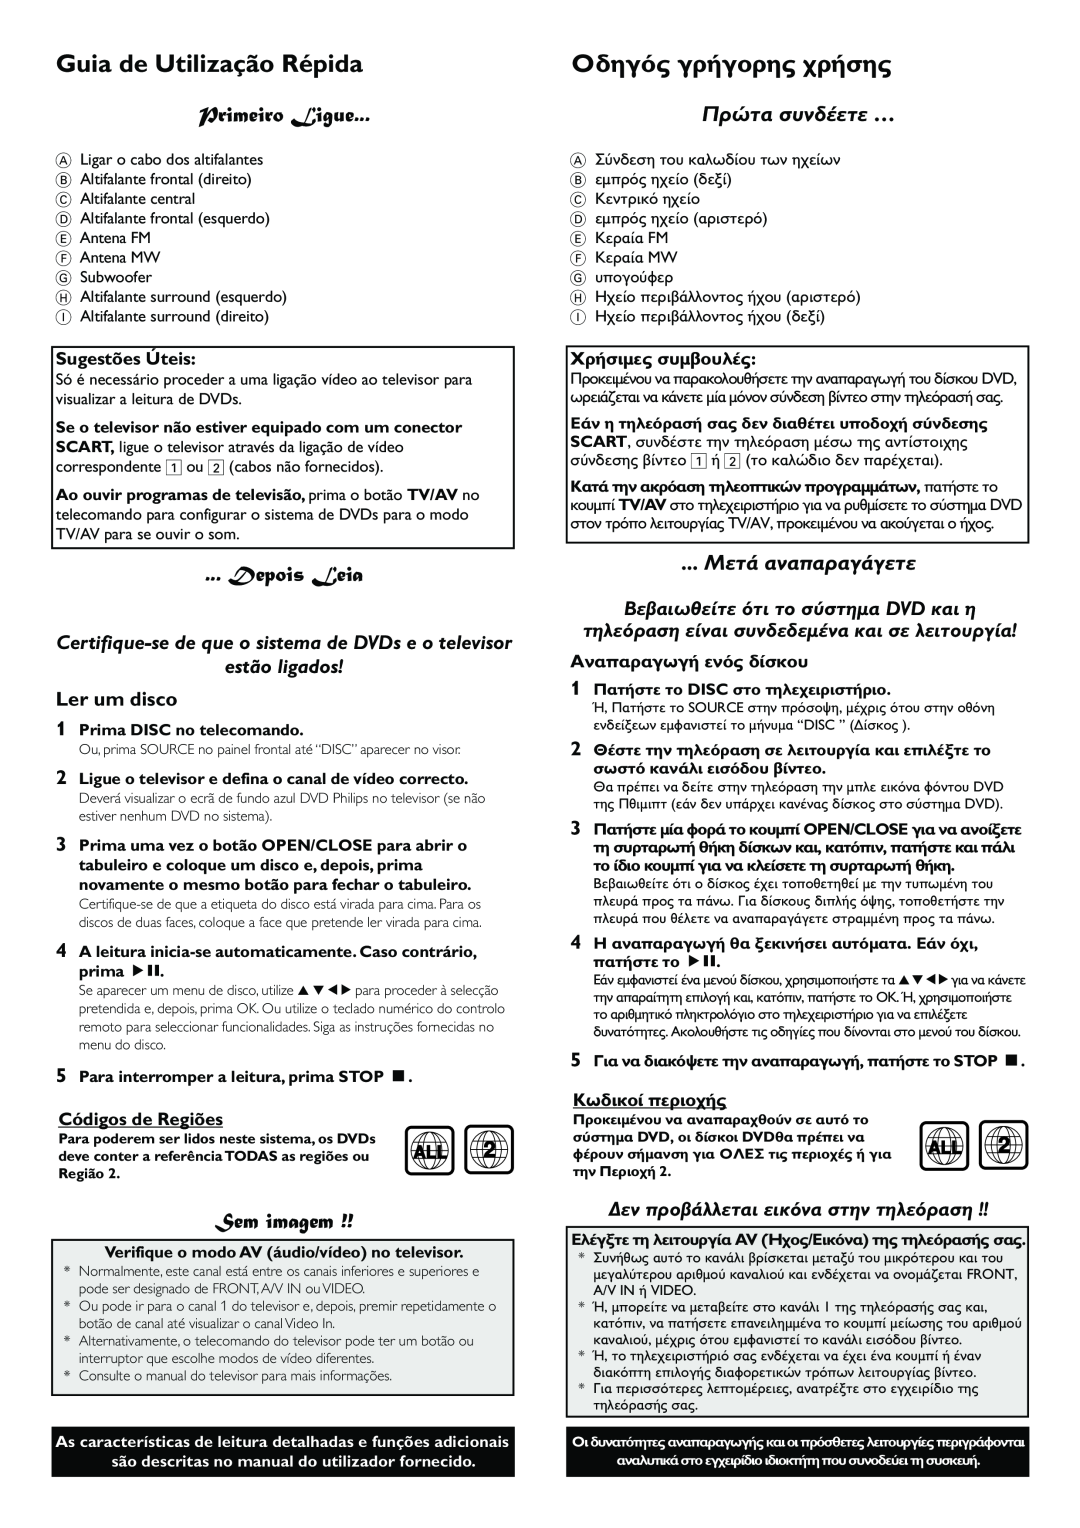 Philips LX7100SA manual Guia de Utilização Répida, Primeiro Ligue, Depois Leia, Sem imagem, estão ligados, Ler um disco 